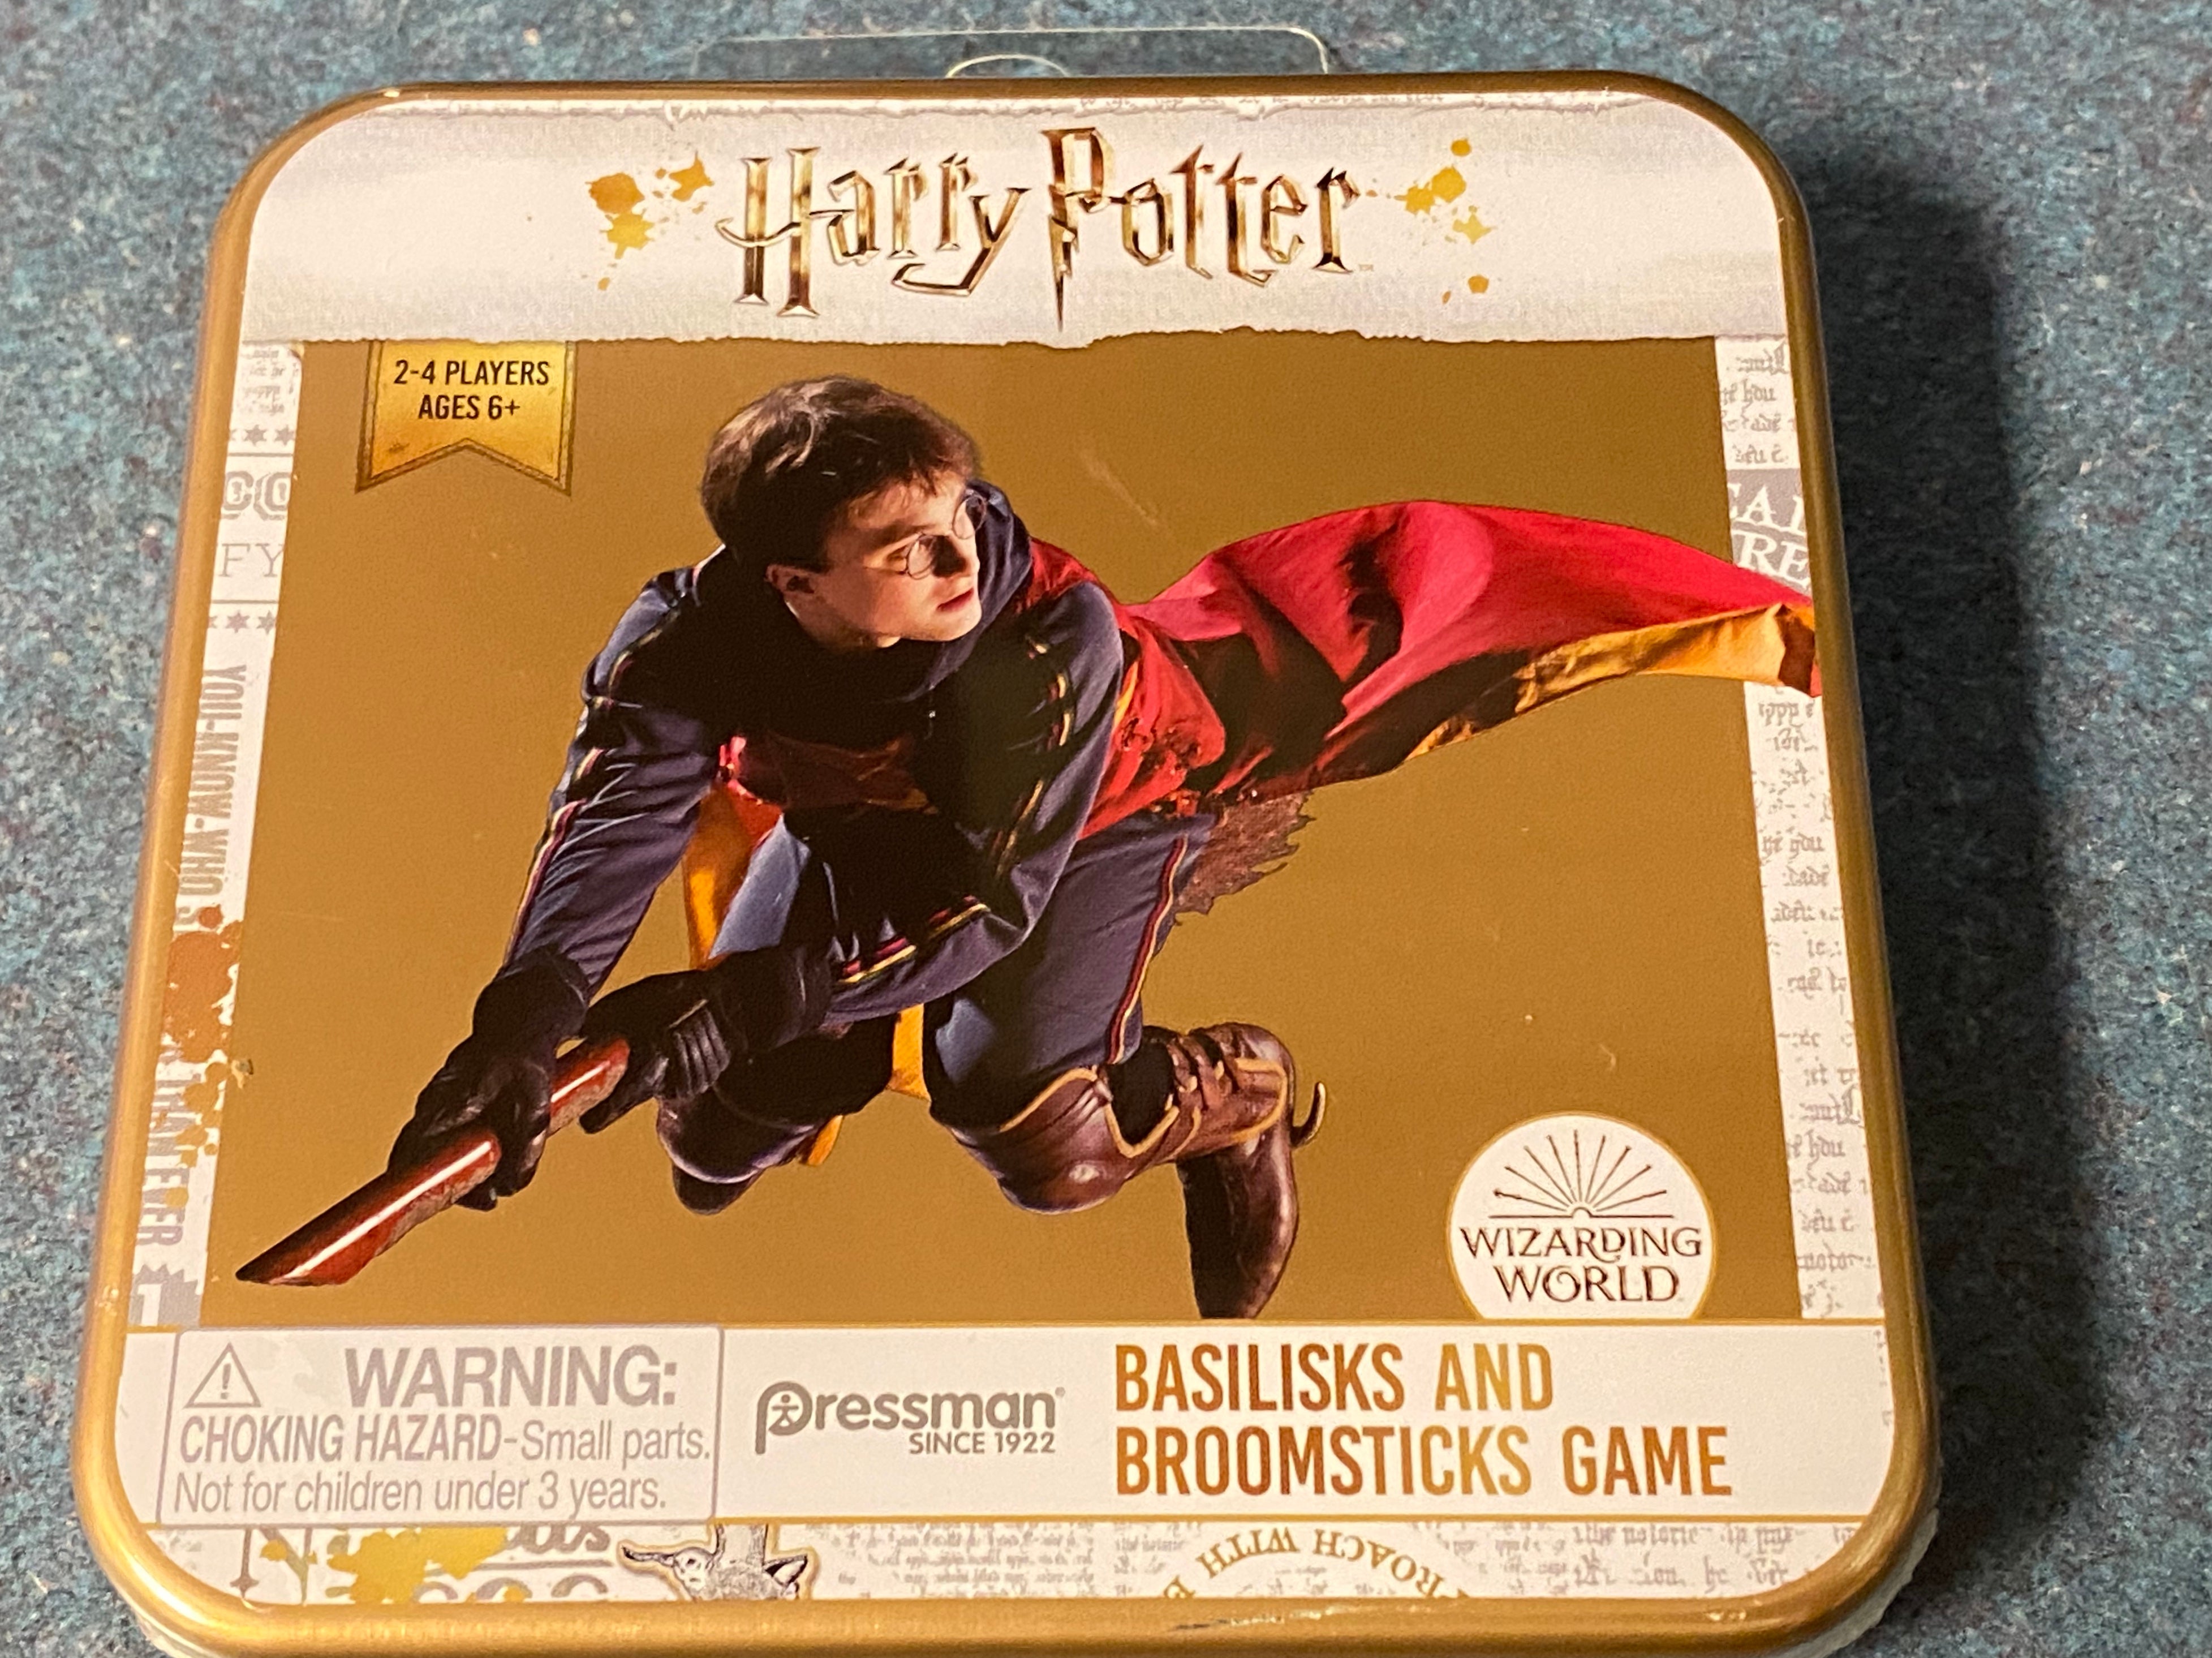 Harry Potter: BASILISKS AND BROOMSTICKS